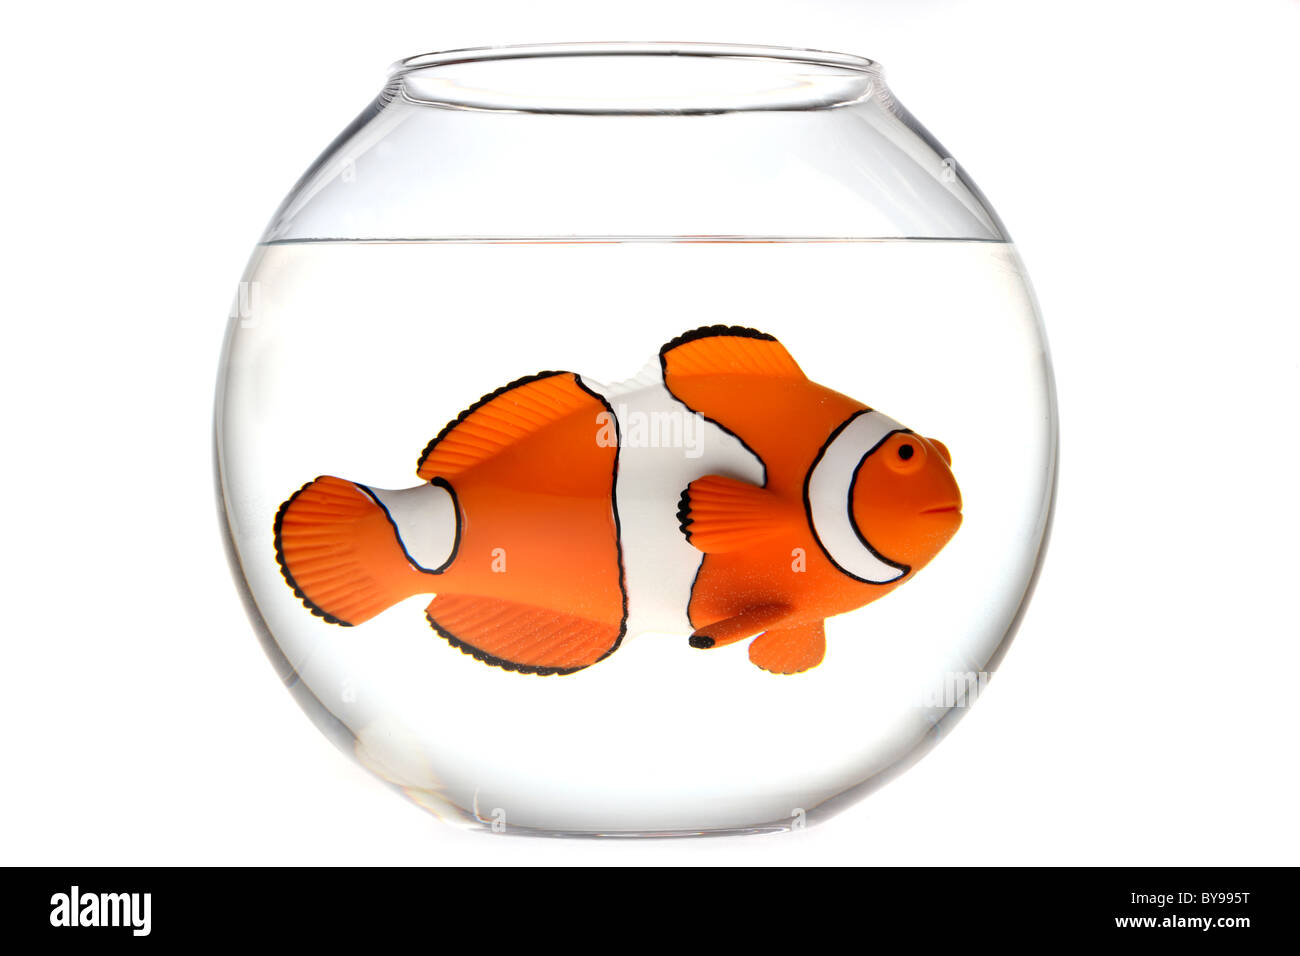 Clown fish, Nemo, in a fish bowl Stock Photo - Alamy